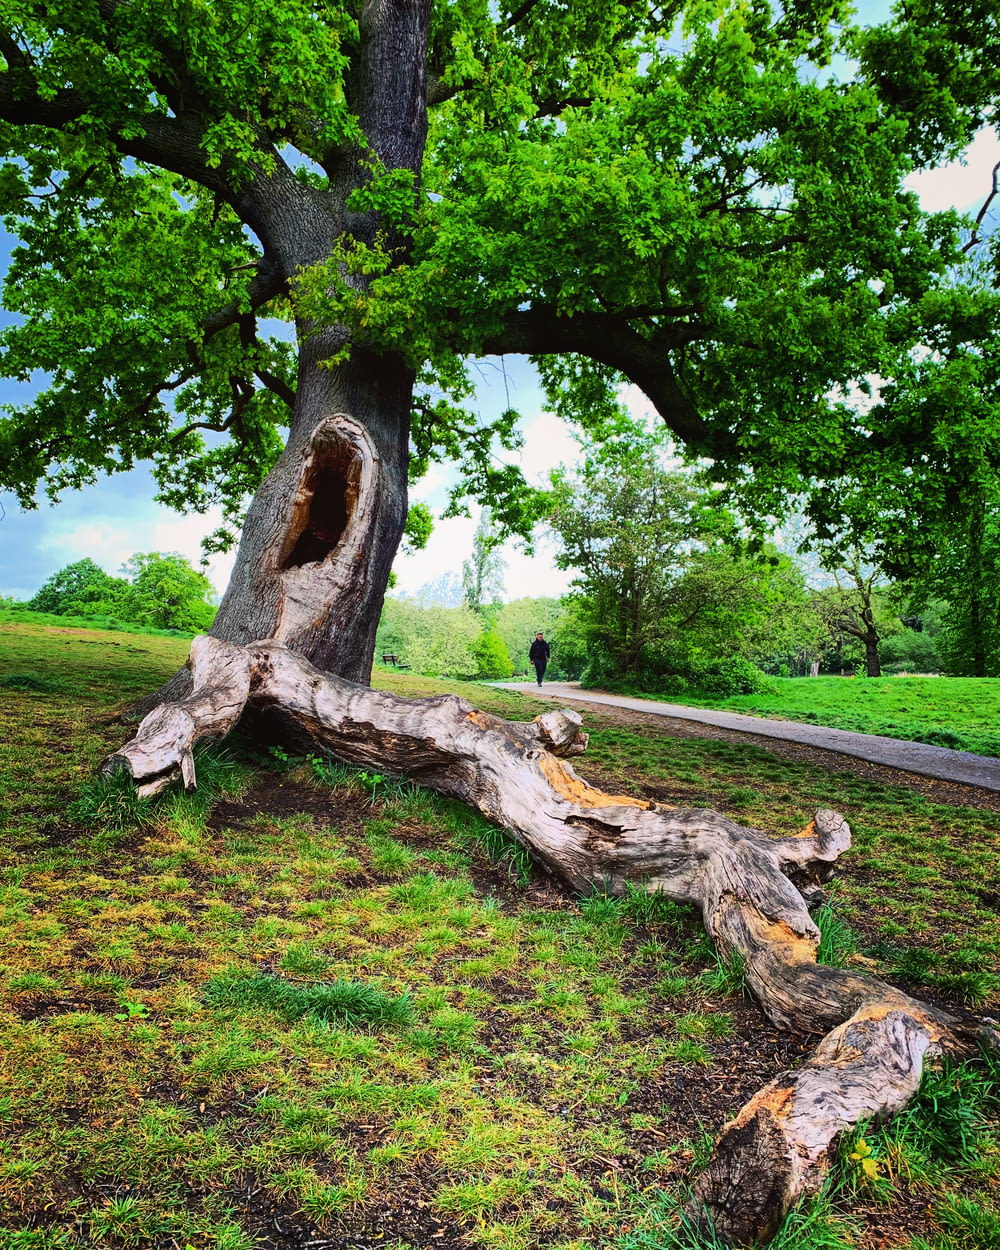 a tree that has fallen down in a field